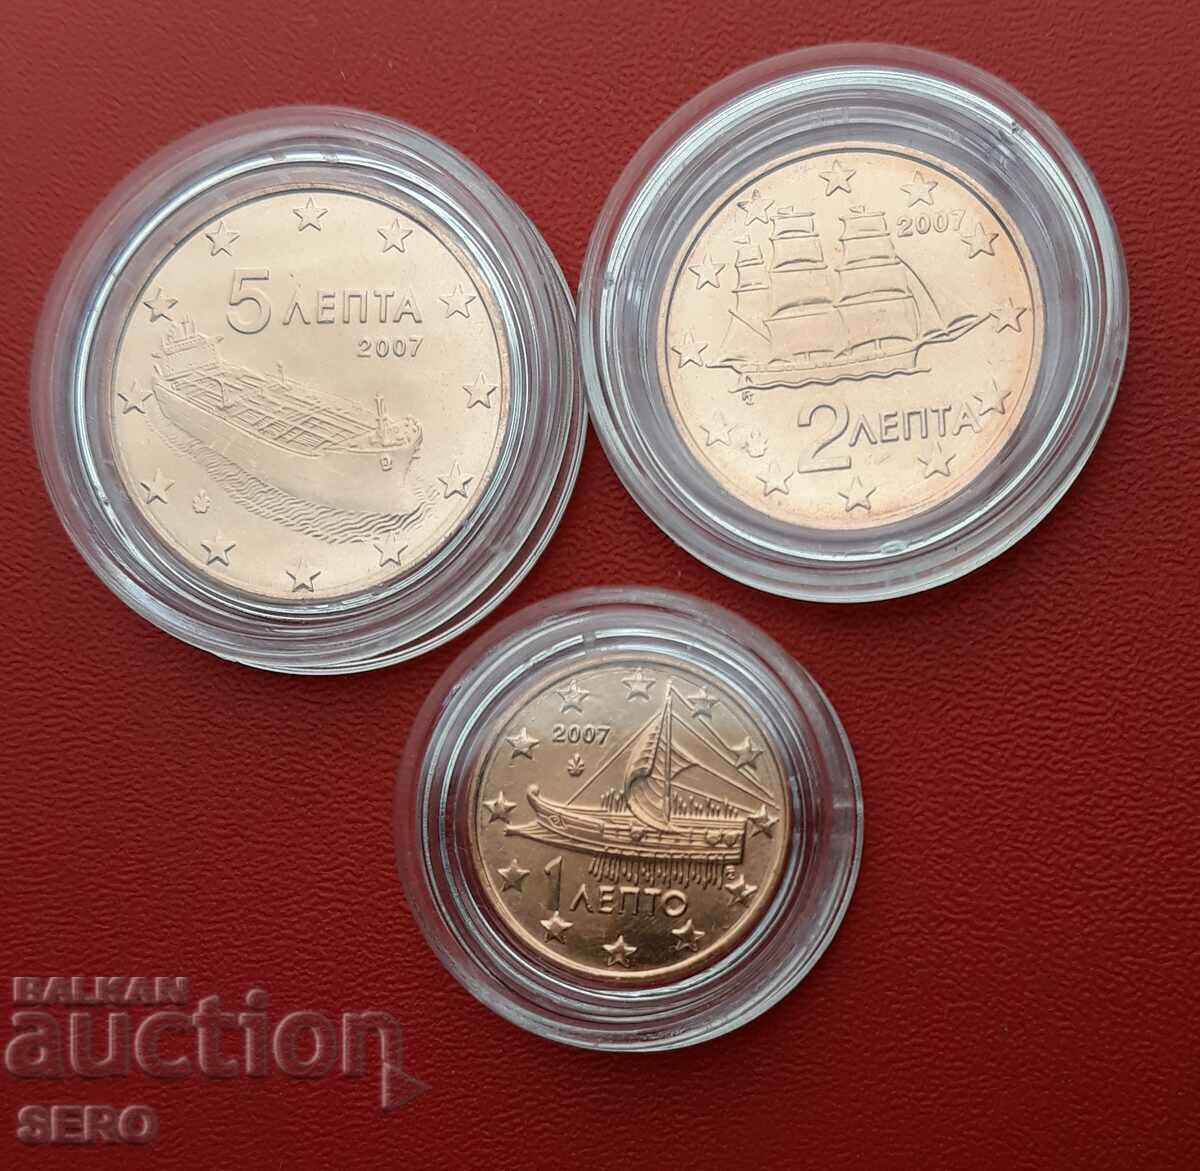 Grecia-lot monede de 3 euro 2007 în capsule